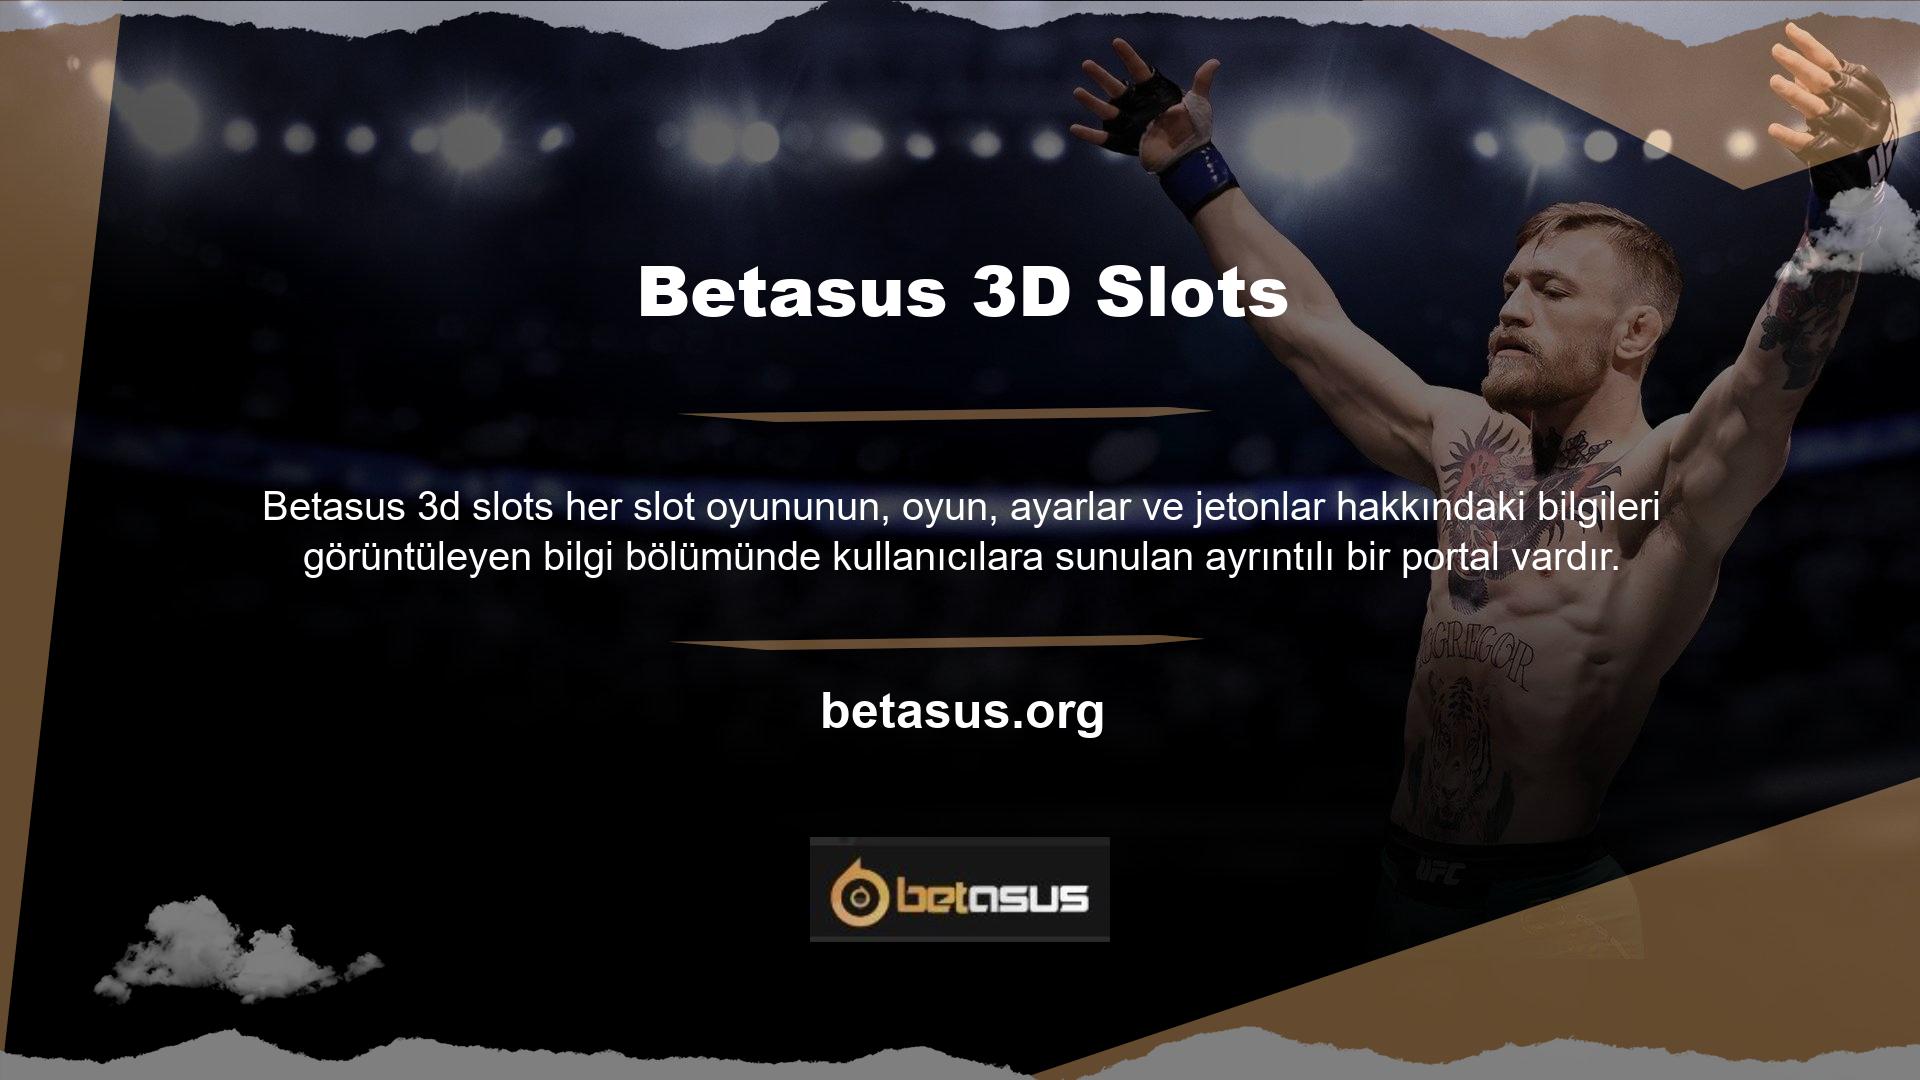 Betasus 3D slotuna casino bölümüne giriş yaptıktan sonra ulaşabilirsiniz